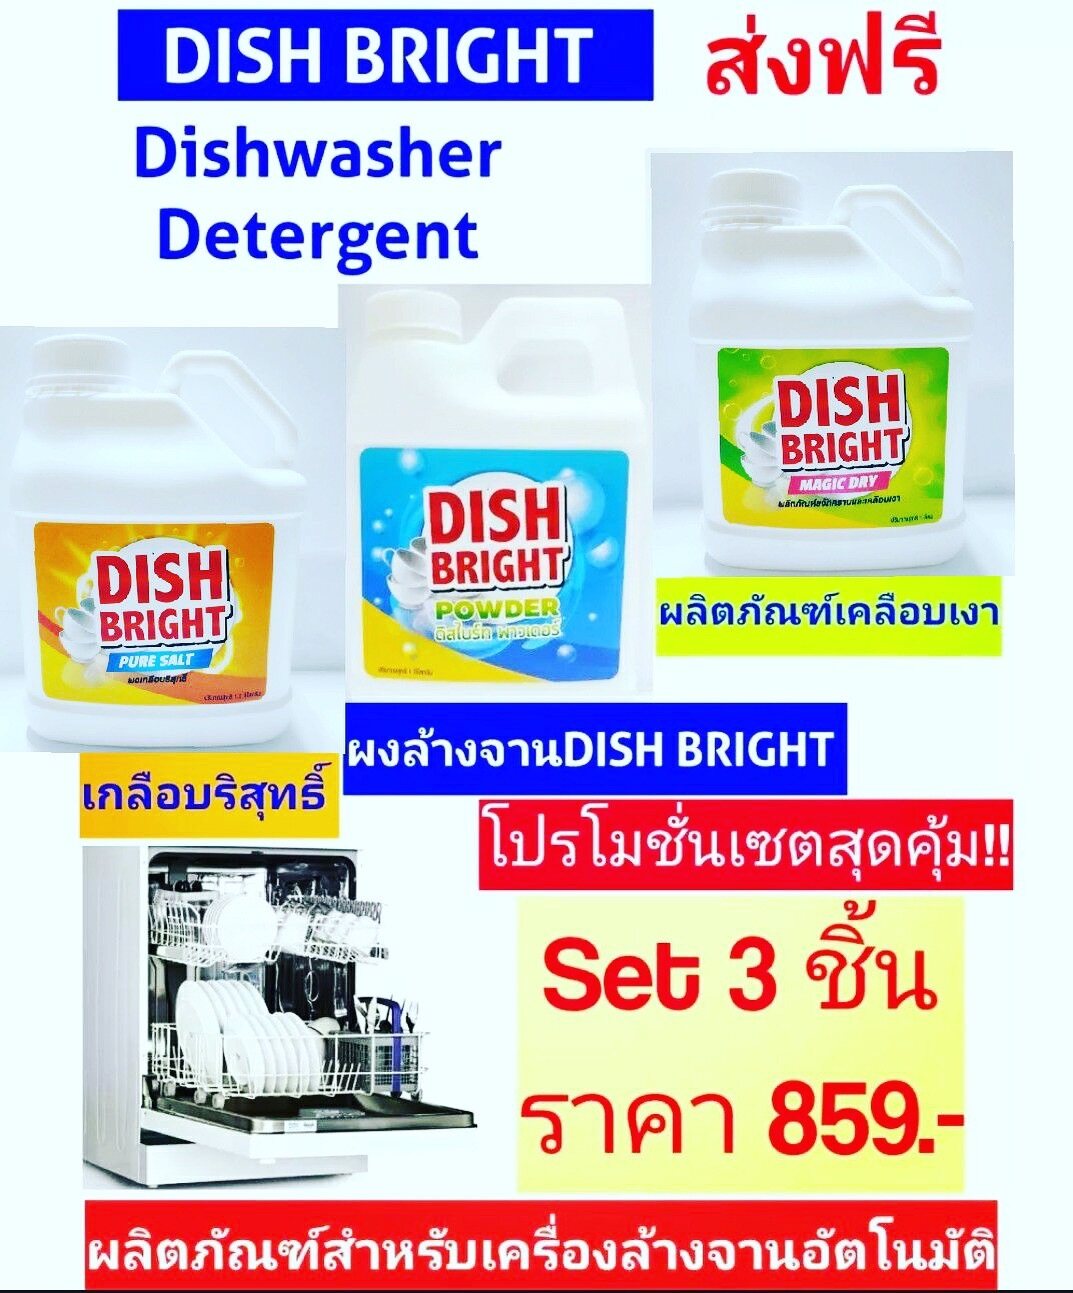 เครื่องล้างจานอัตโนมัติ ผลิตภัณฑ์ Dish Bright ชุดล้างภาชนะด้วยเครื่องล้างจาน ผงล้างจาน น้ำยาเคลือบเงาแวววาว ผงเกลือปรับสภาพน้ำ